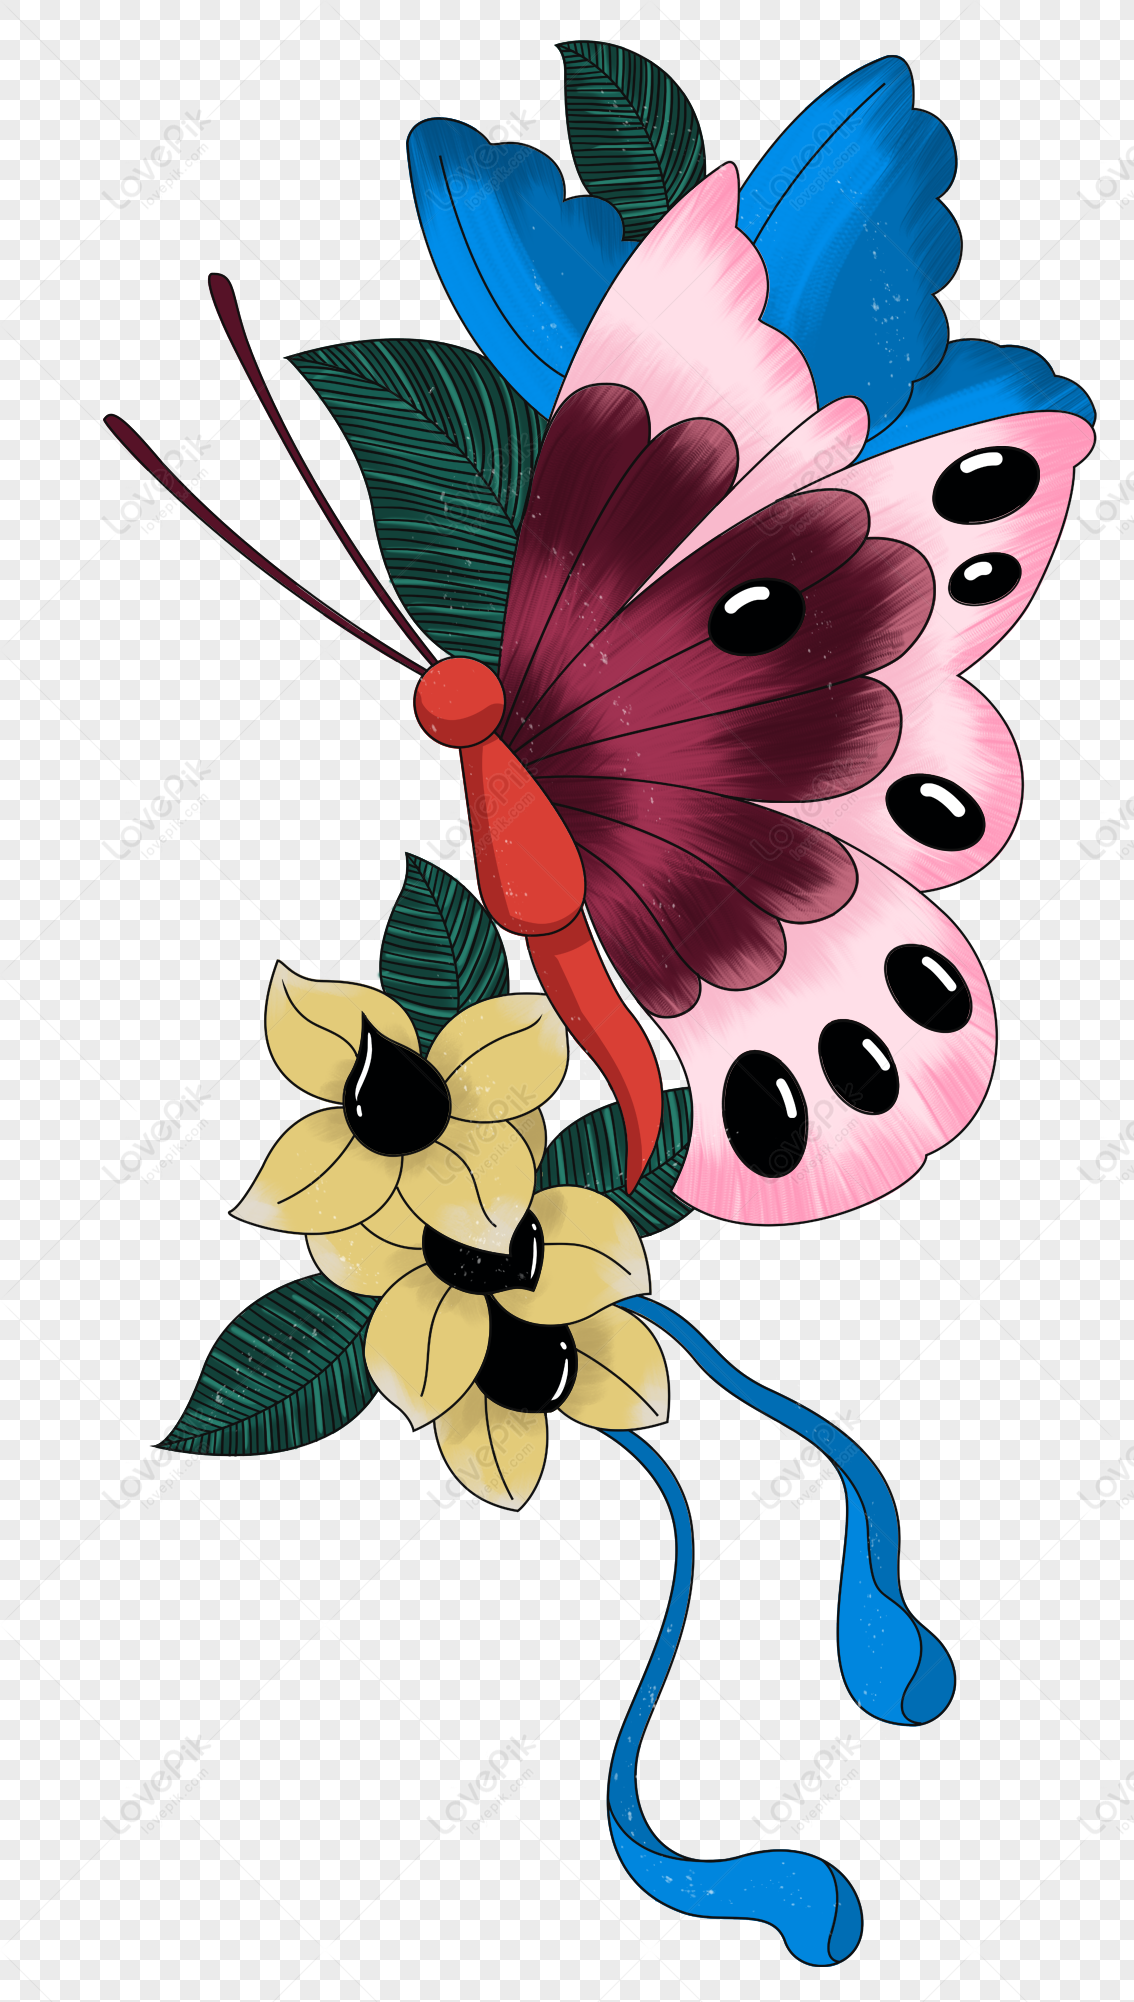 Hình ảnh bướm và hoa trong suốt: Thưởng thức những bức ảnh đầy mê hoặc, bao gồm những hình ảnh của bướm và hoa trong suốt. Cảm nhận sự thanh khiết và tinh tế của phong cách nghệ thuật này.